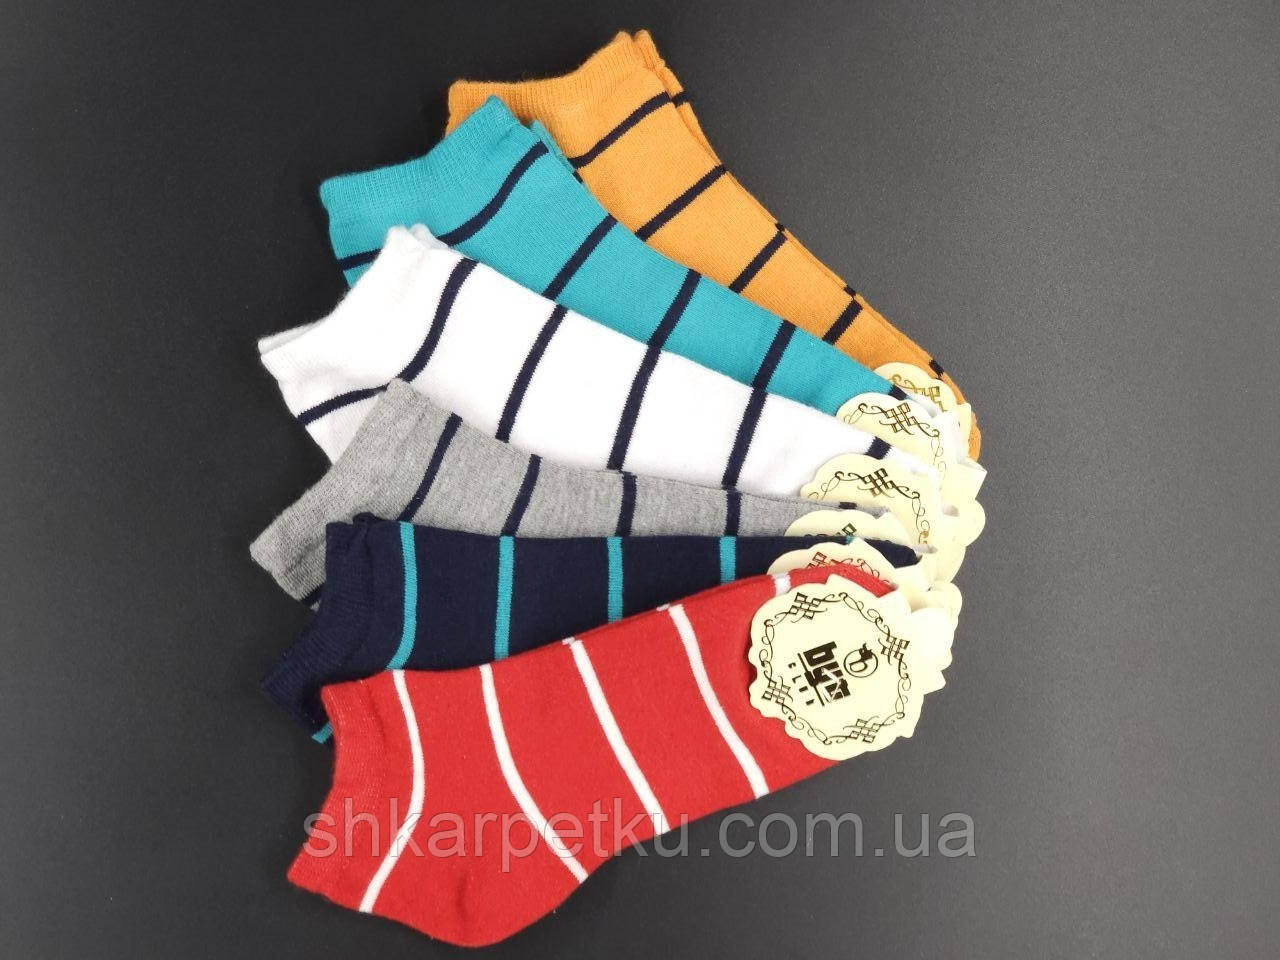 Жіночі короткі шкарпетки Byt club Смужки, бавовна, 36-40 12 пар/уп мікс кольорів